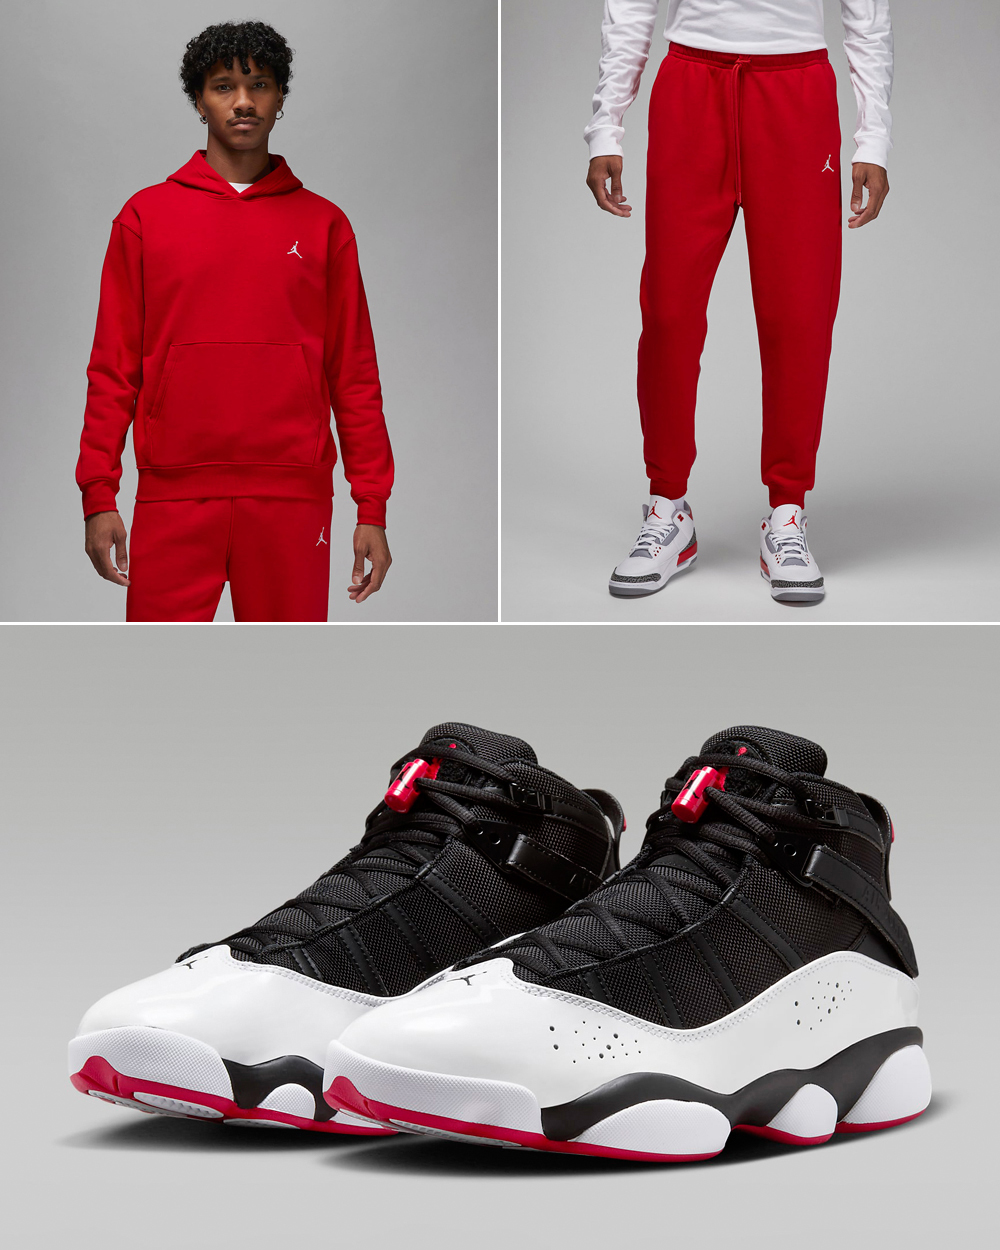 Jordan-6-Rings-Black-White-University-Red-Hoodie-Pants-Outfit